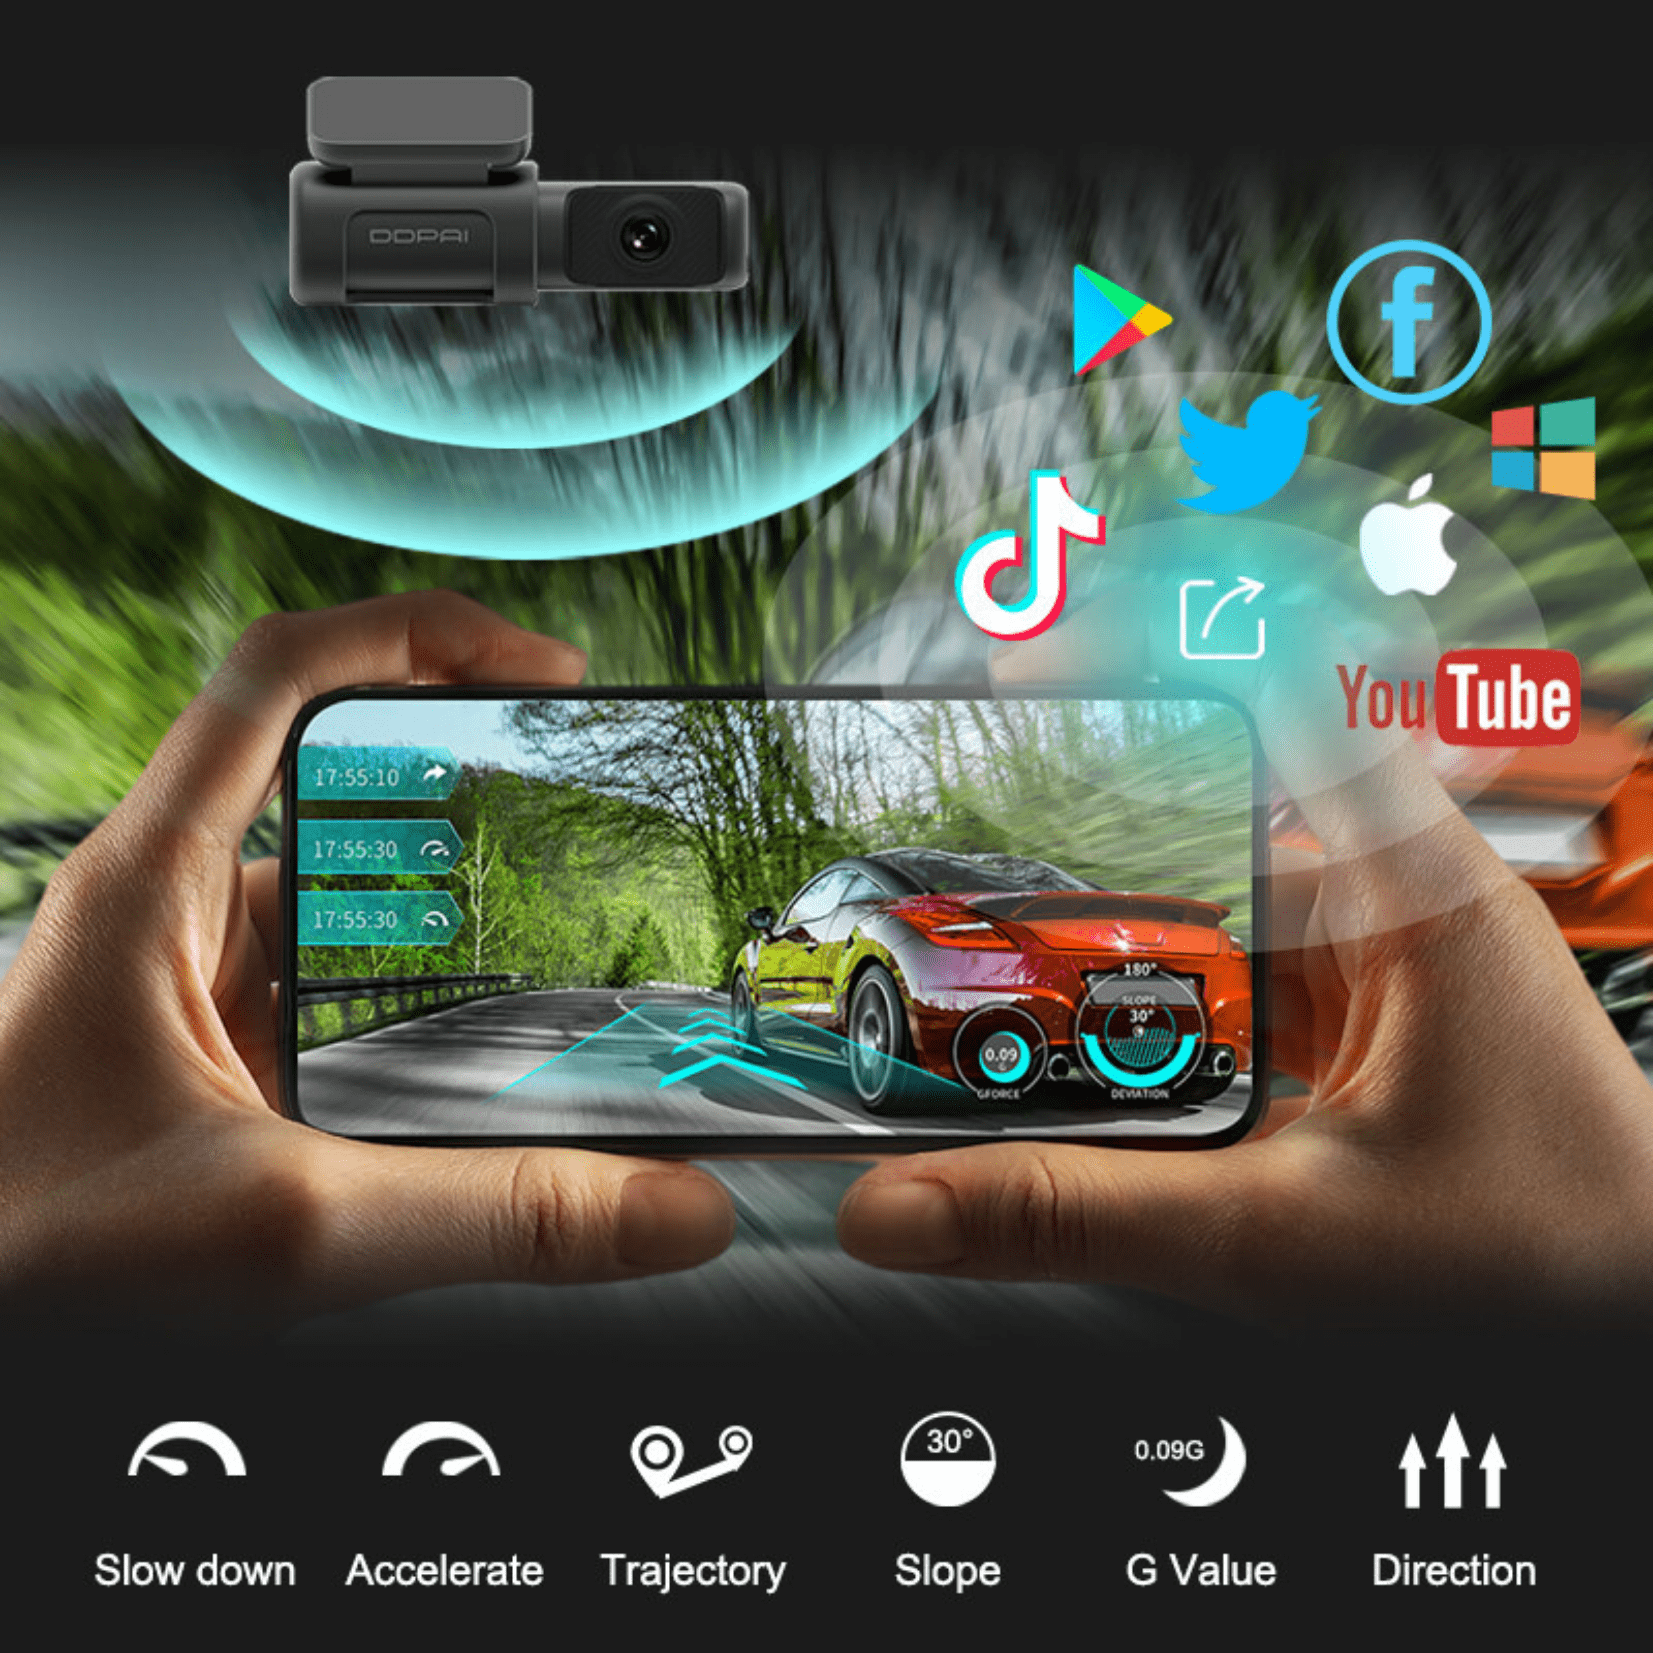 DDPai Dash Cam Mini 5 - 4K 2160P HD | GPS Tracking | 64GB Built-In Memory